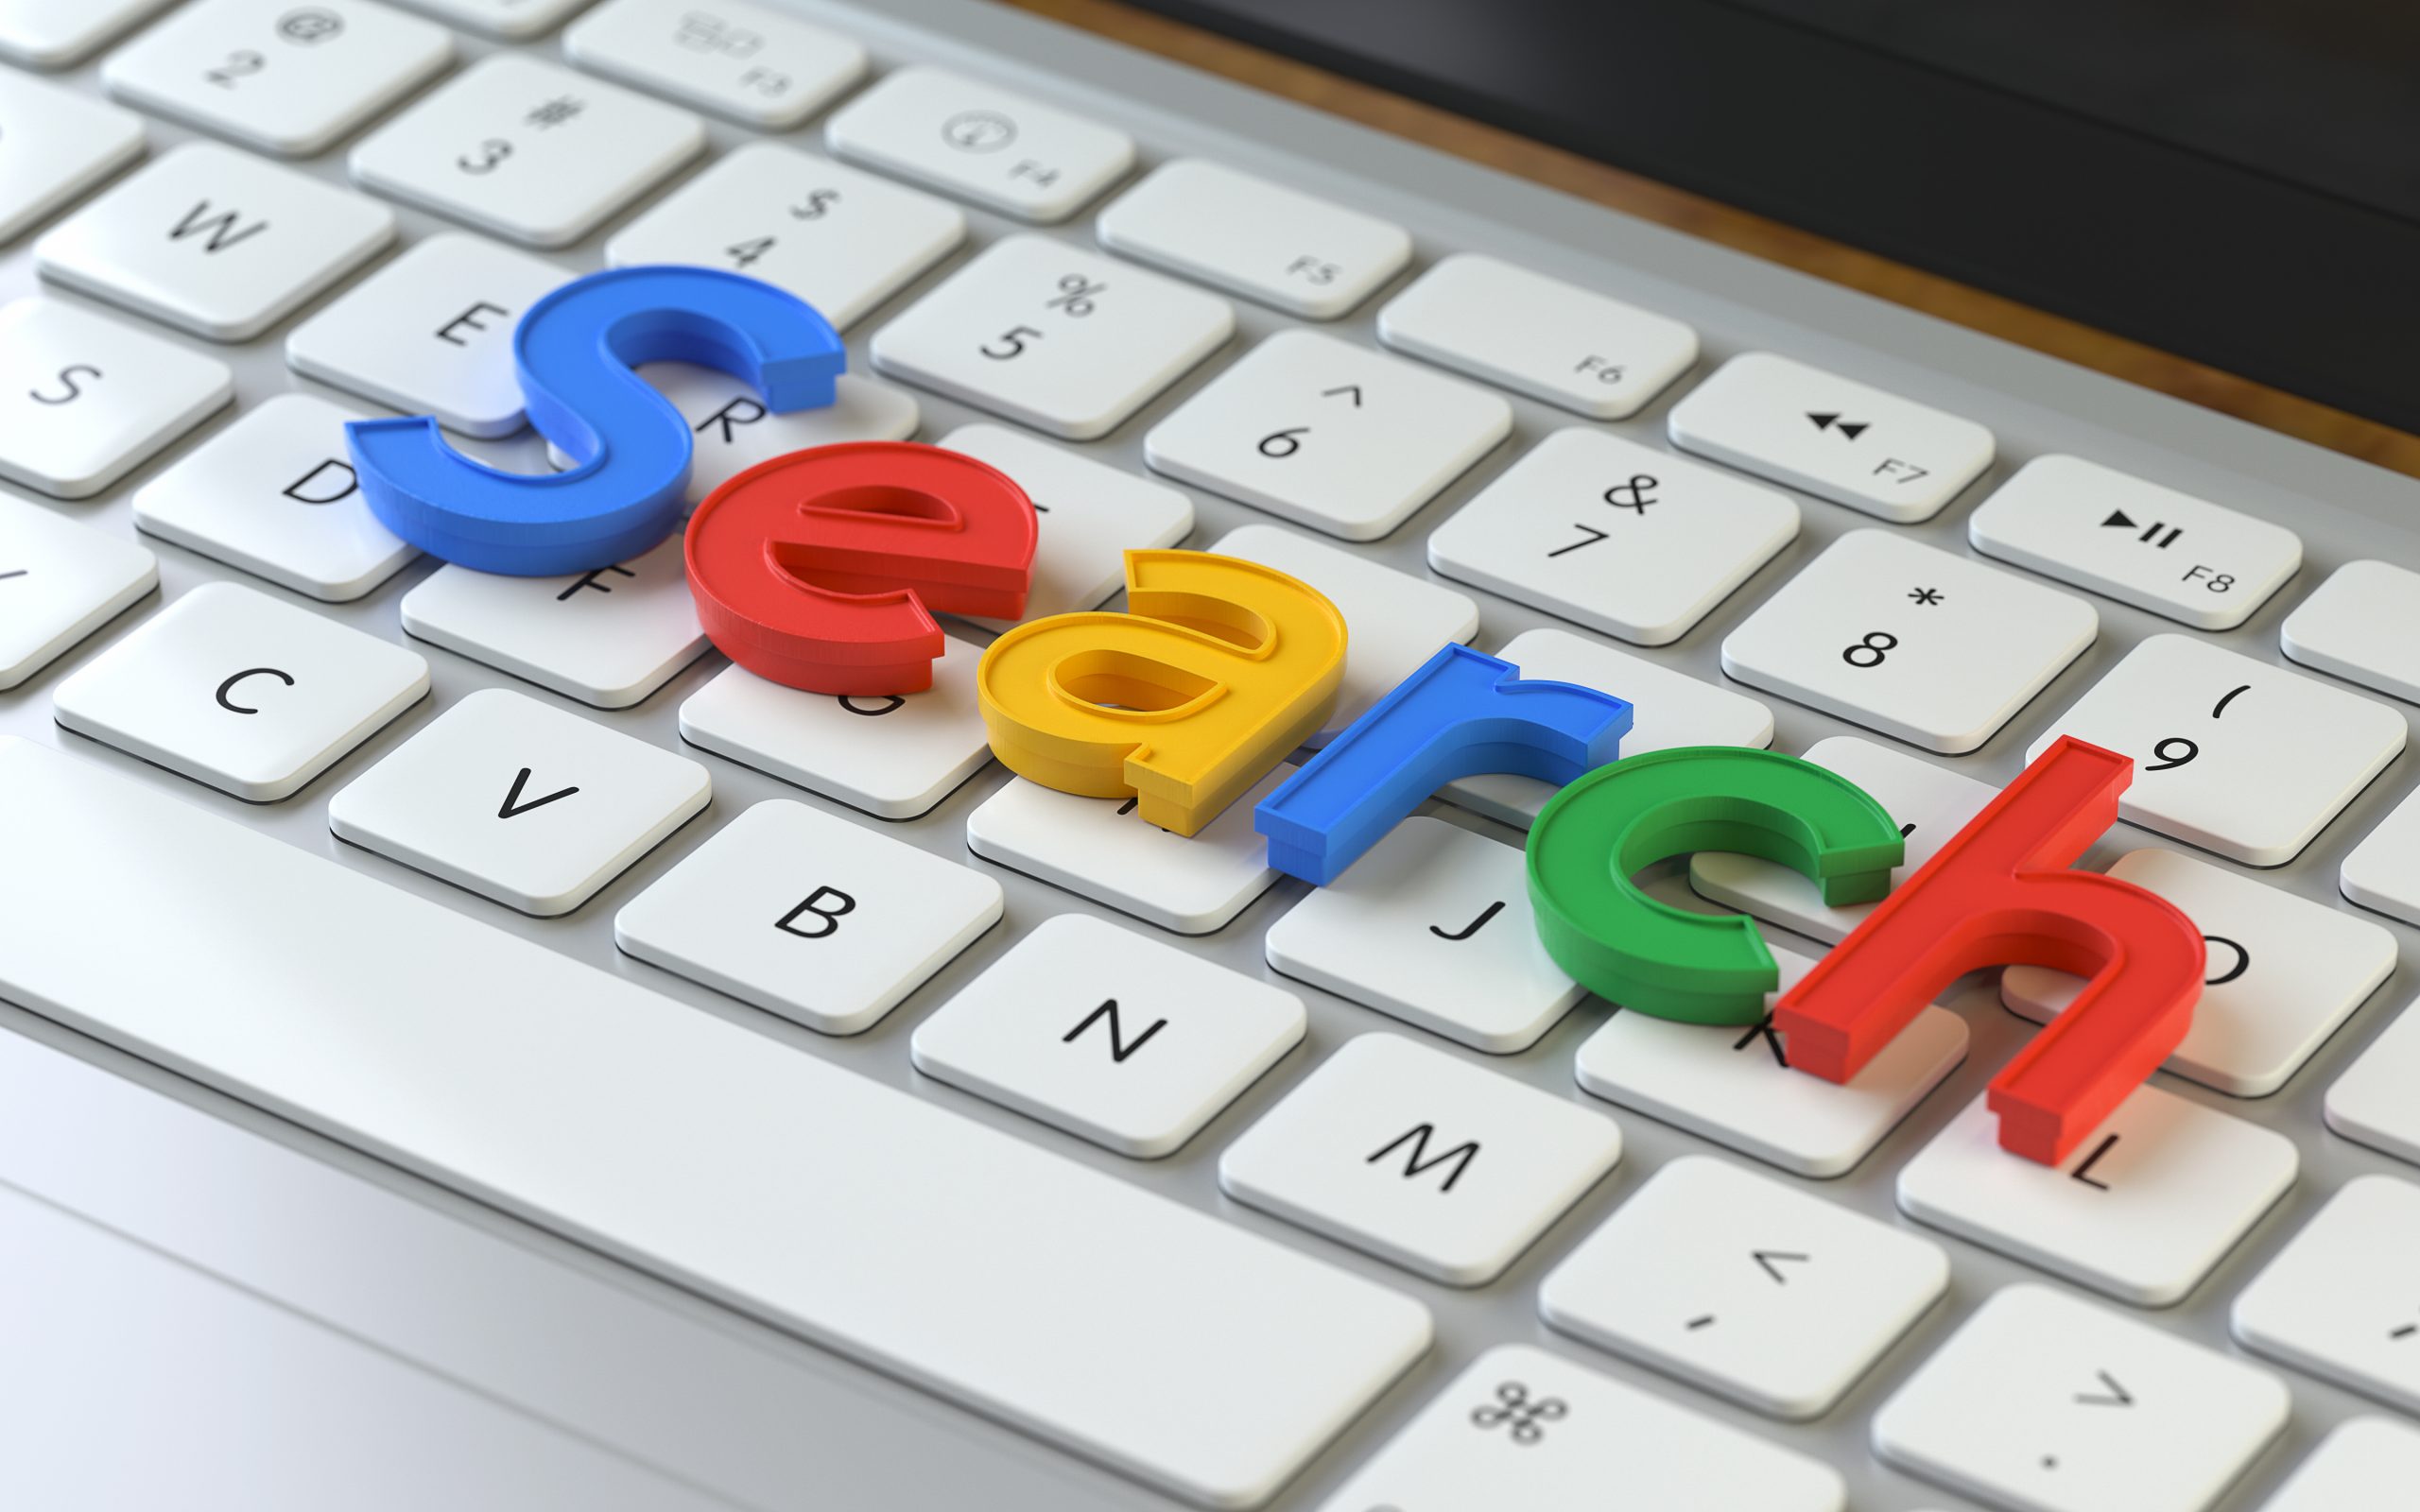 Segnalare una violazione del marchio su Google